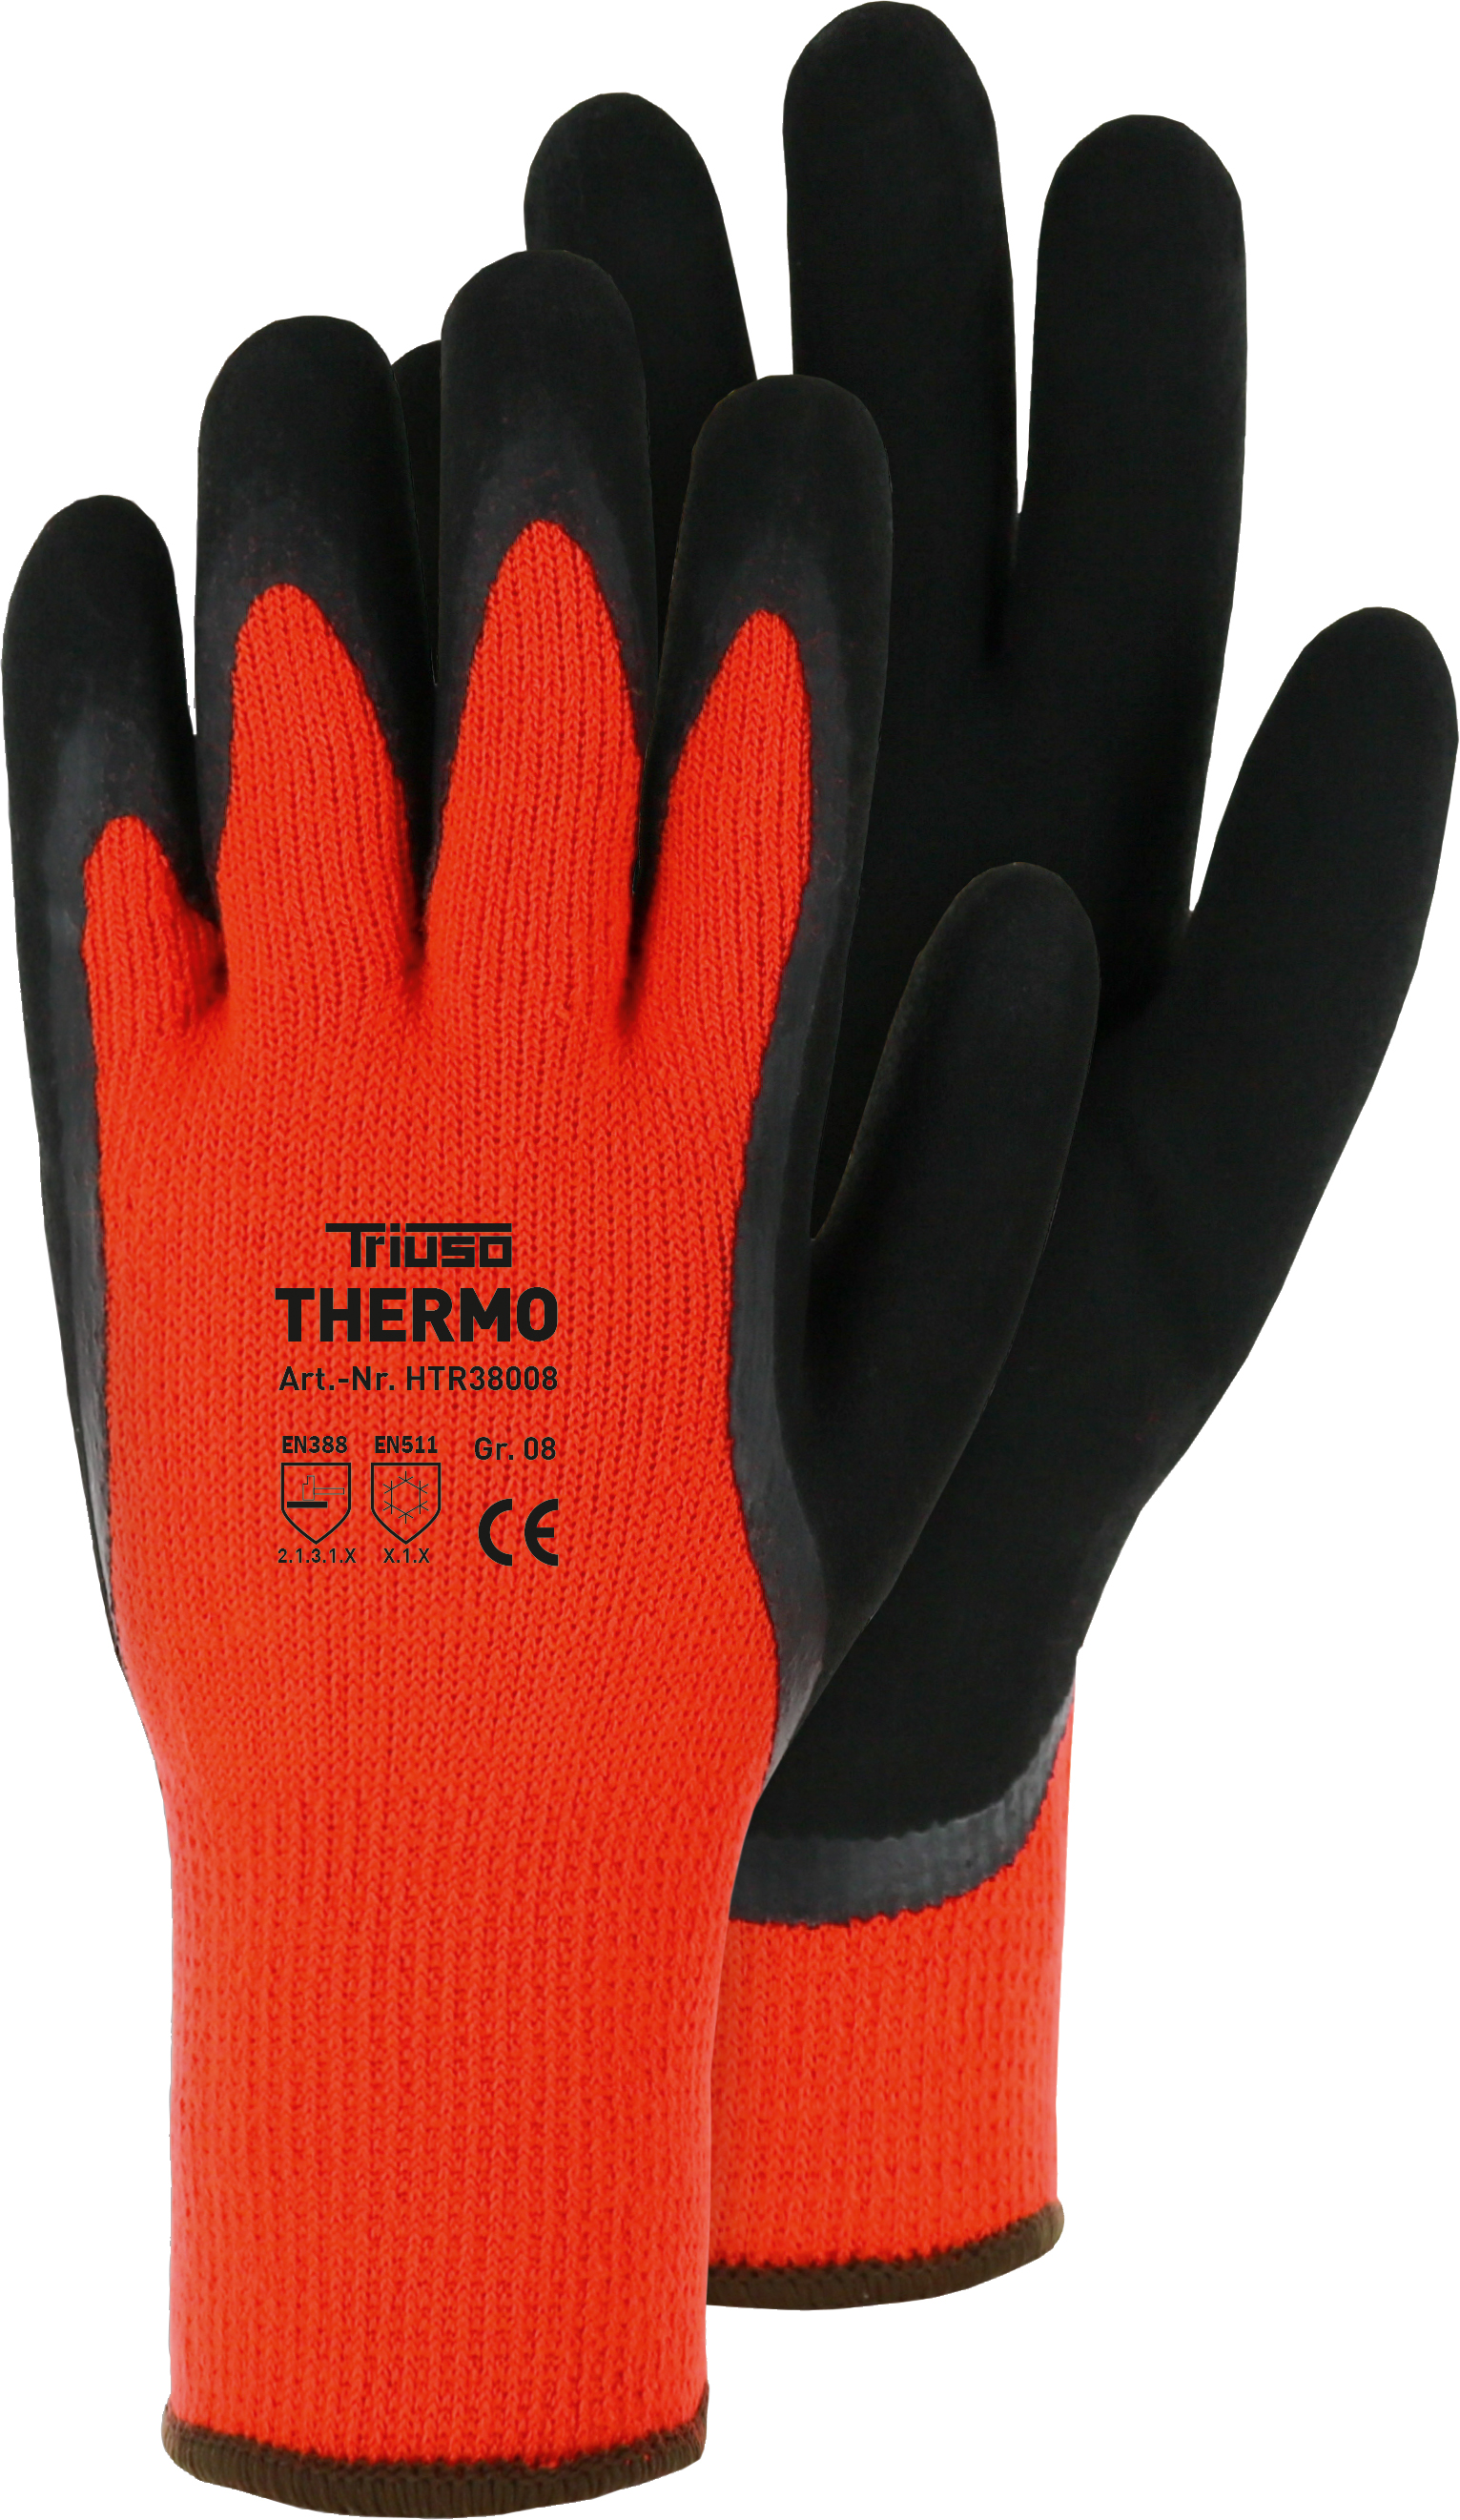 Triuso Thermo-Handschuh, orange Gr. 10